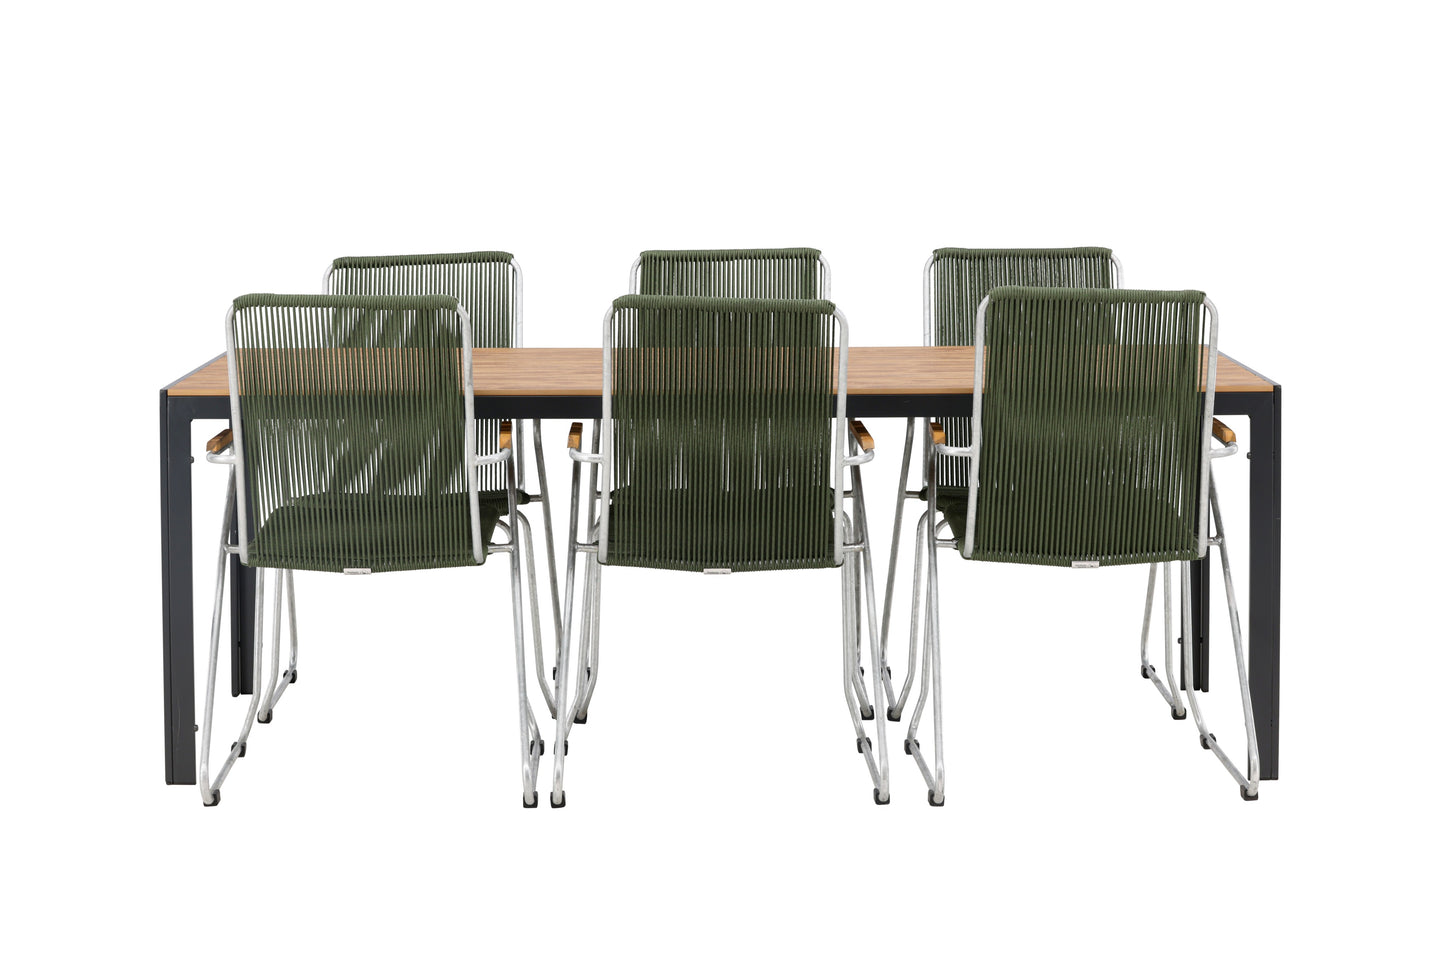 Break - Spisebord, Aluminium - Sort / Natur Rektangulær 90*200* + Bois stol Stål - Sølv / Grøn Reb